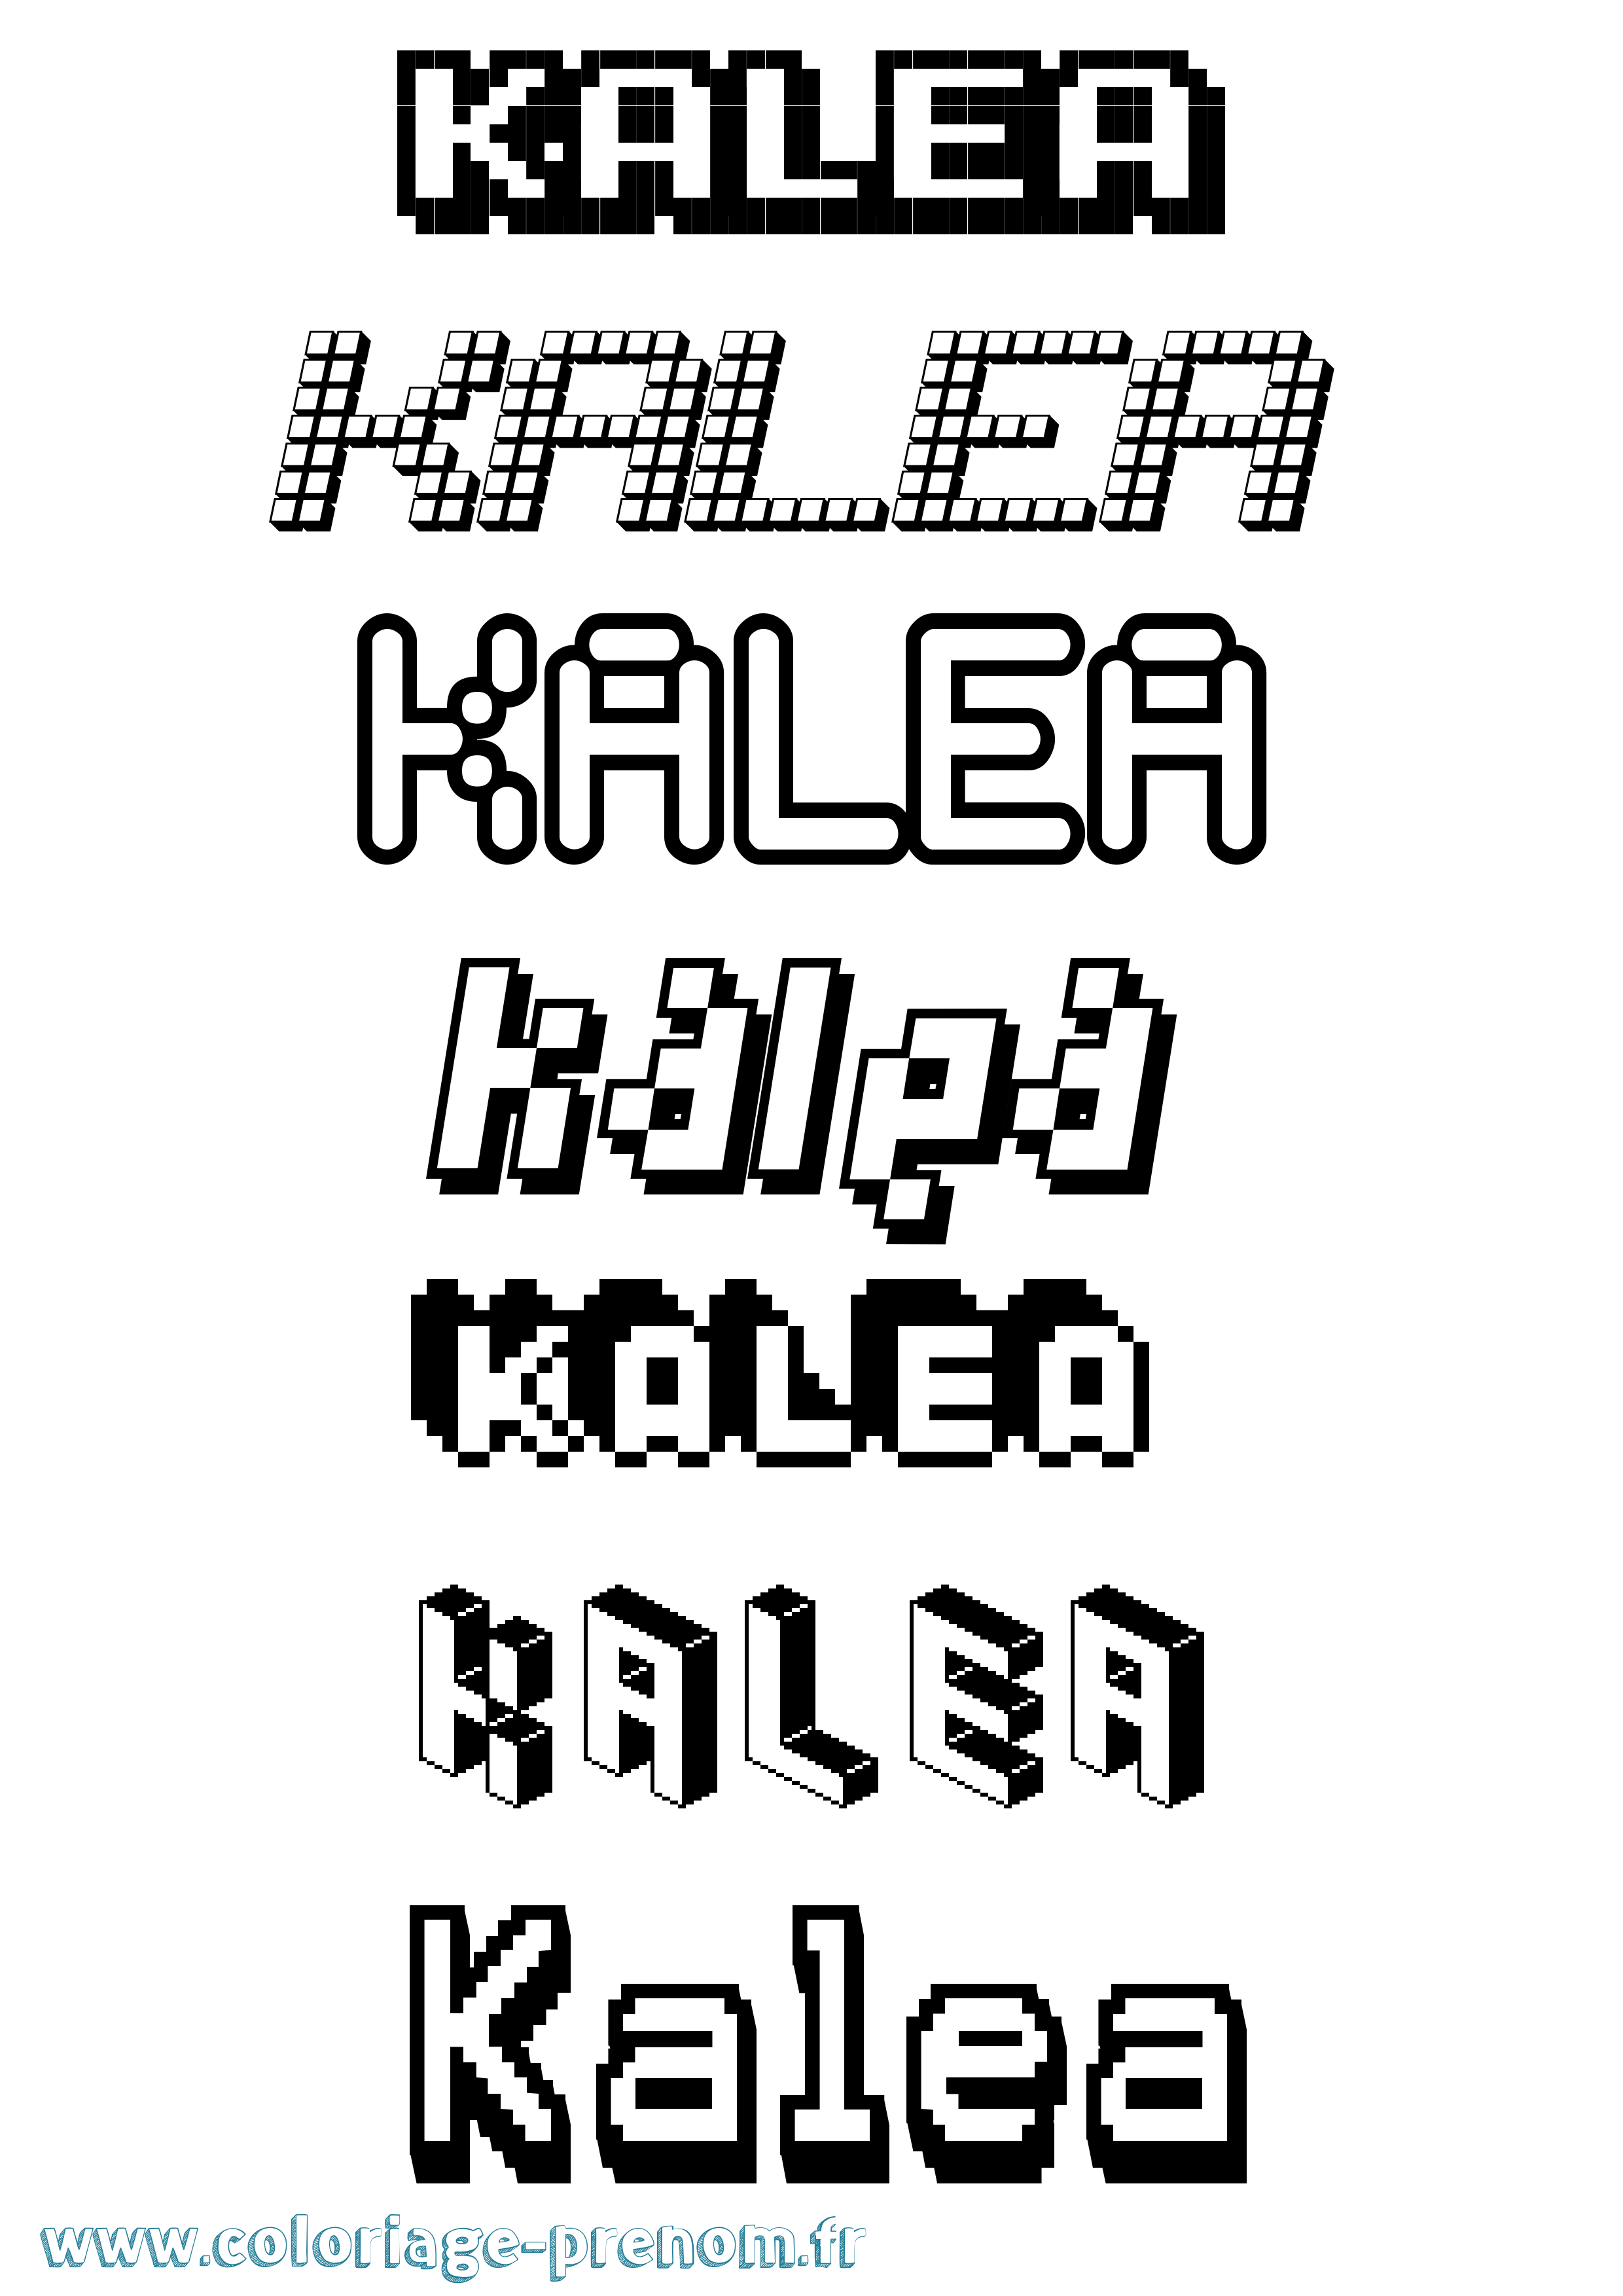 Coloriage prénom Kalea Pixel